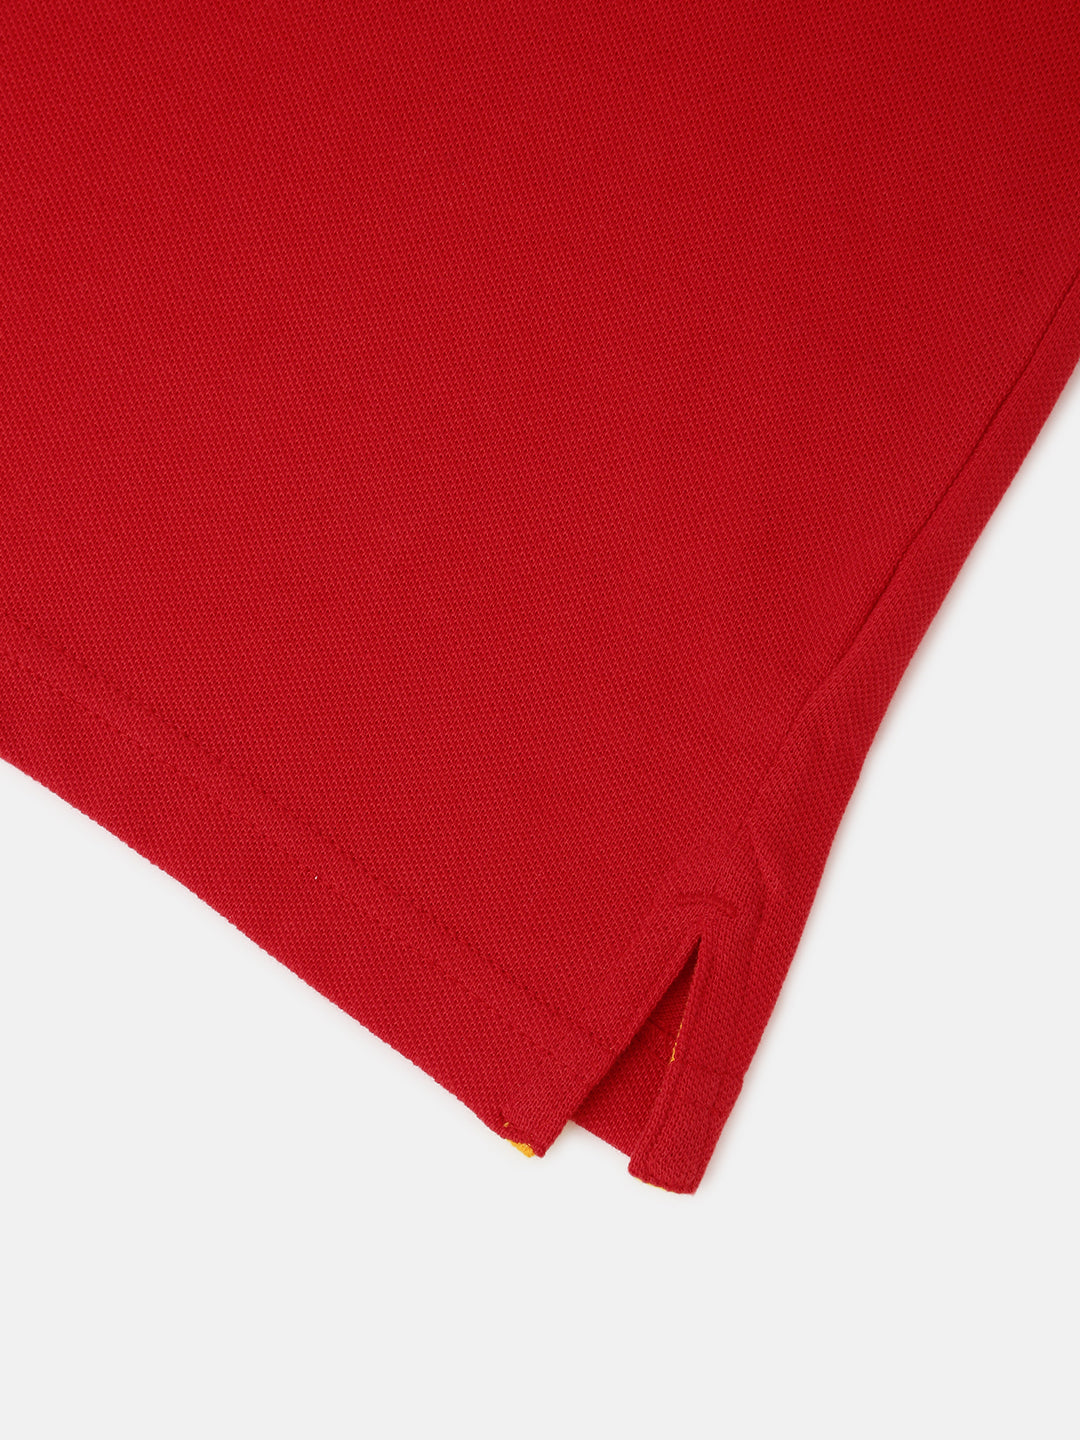 PIPIN Boys Printed T-shirt Red